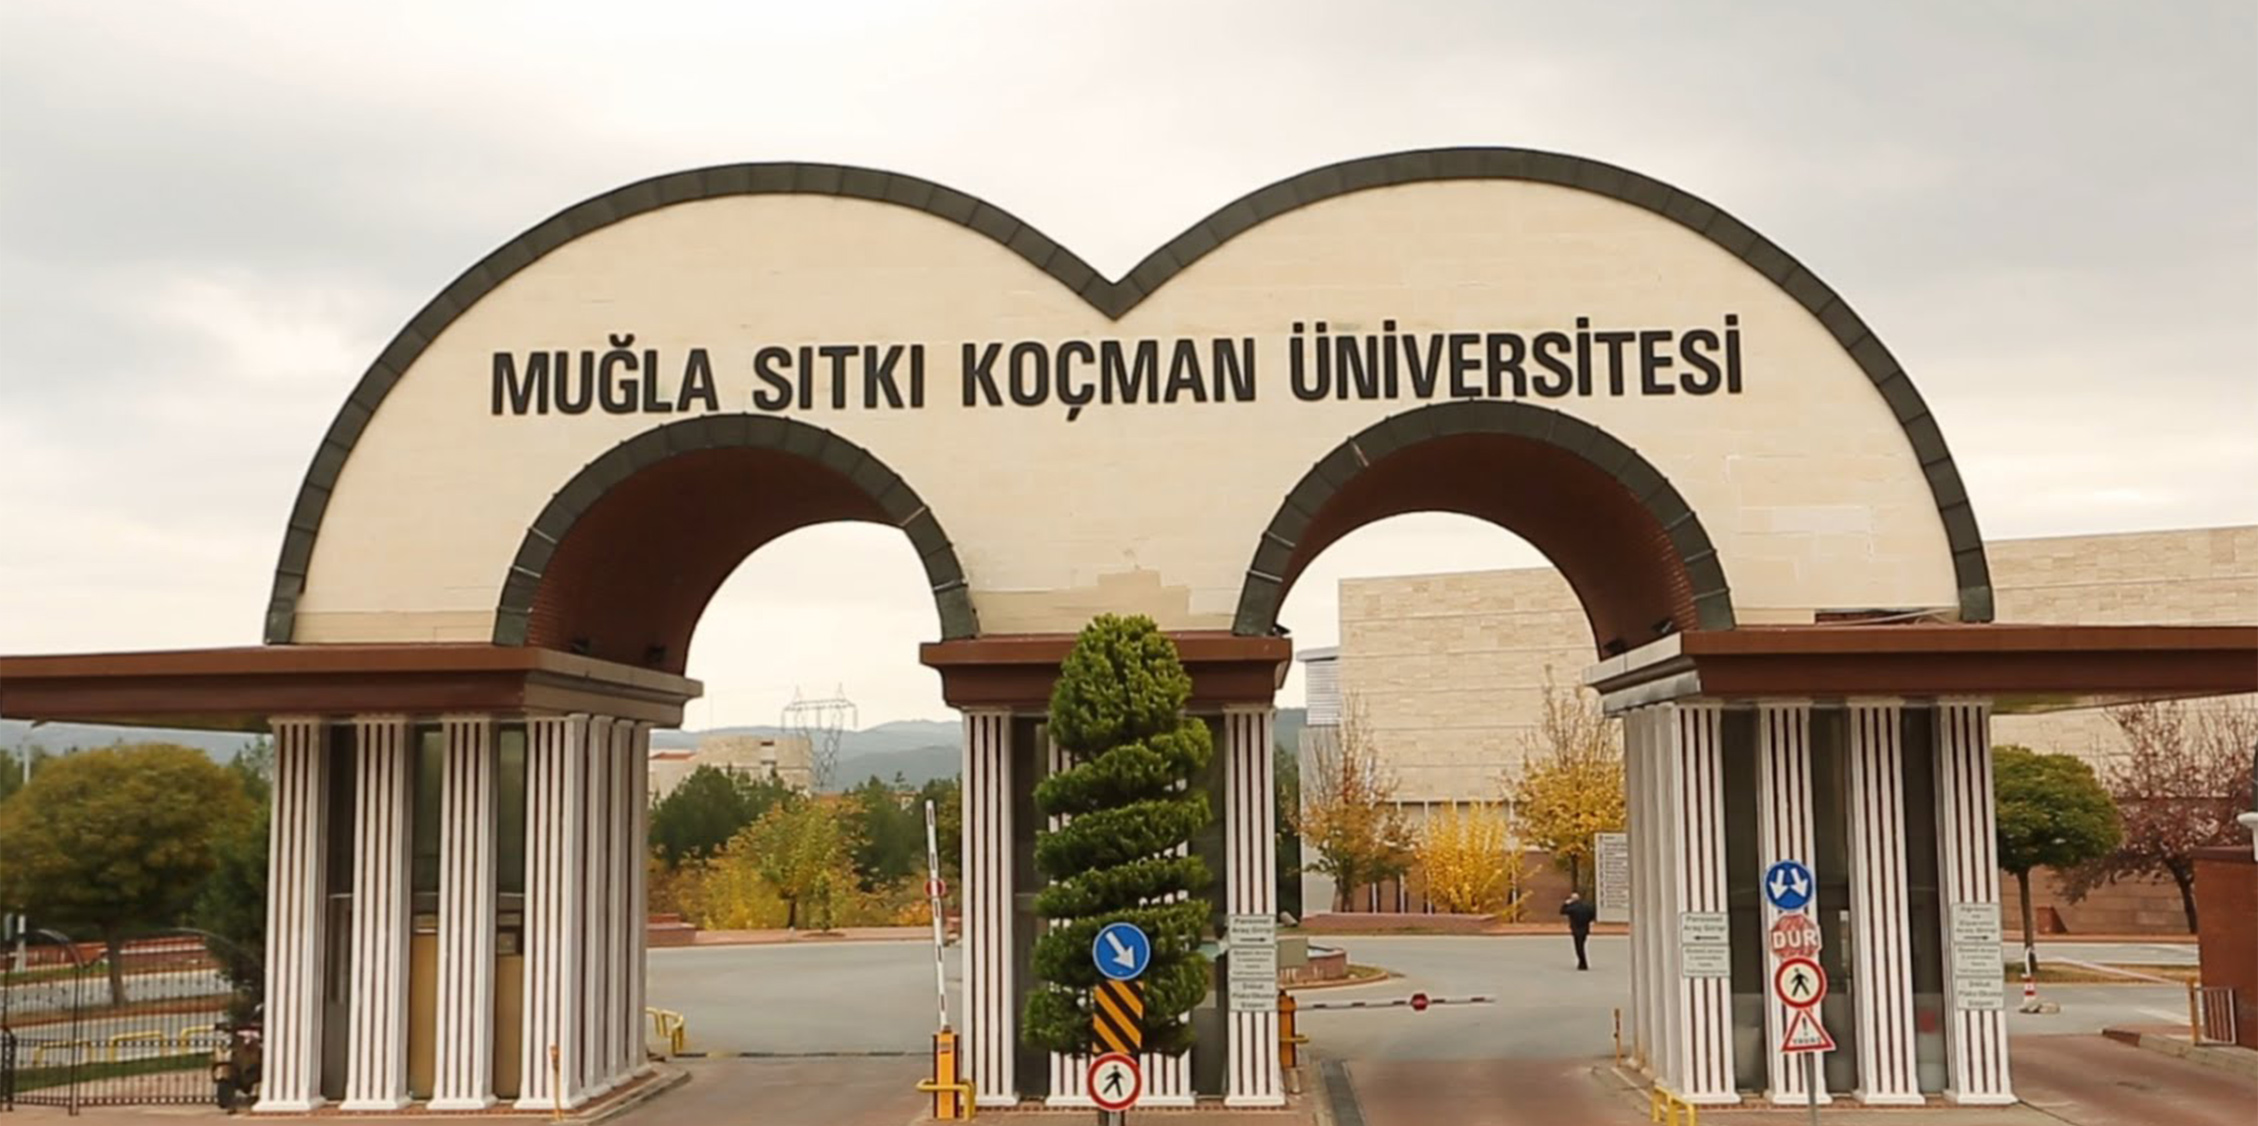 muglasitki universitesi find and study 1 - Muğla Sitka Koçman Universiteti